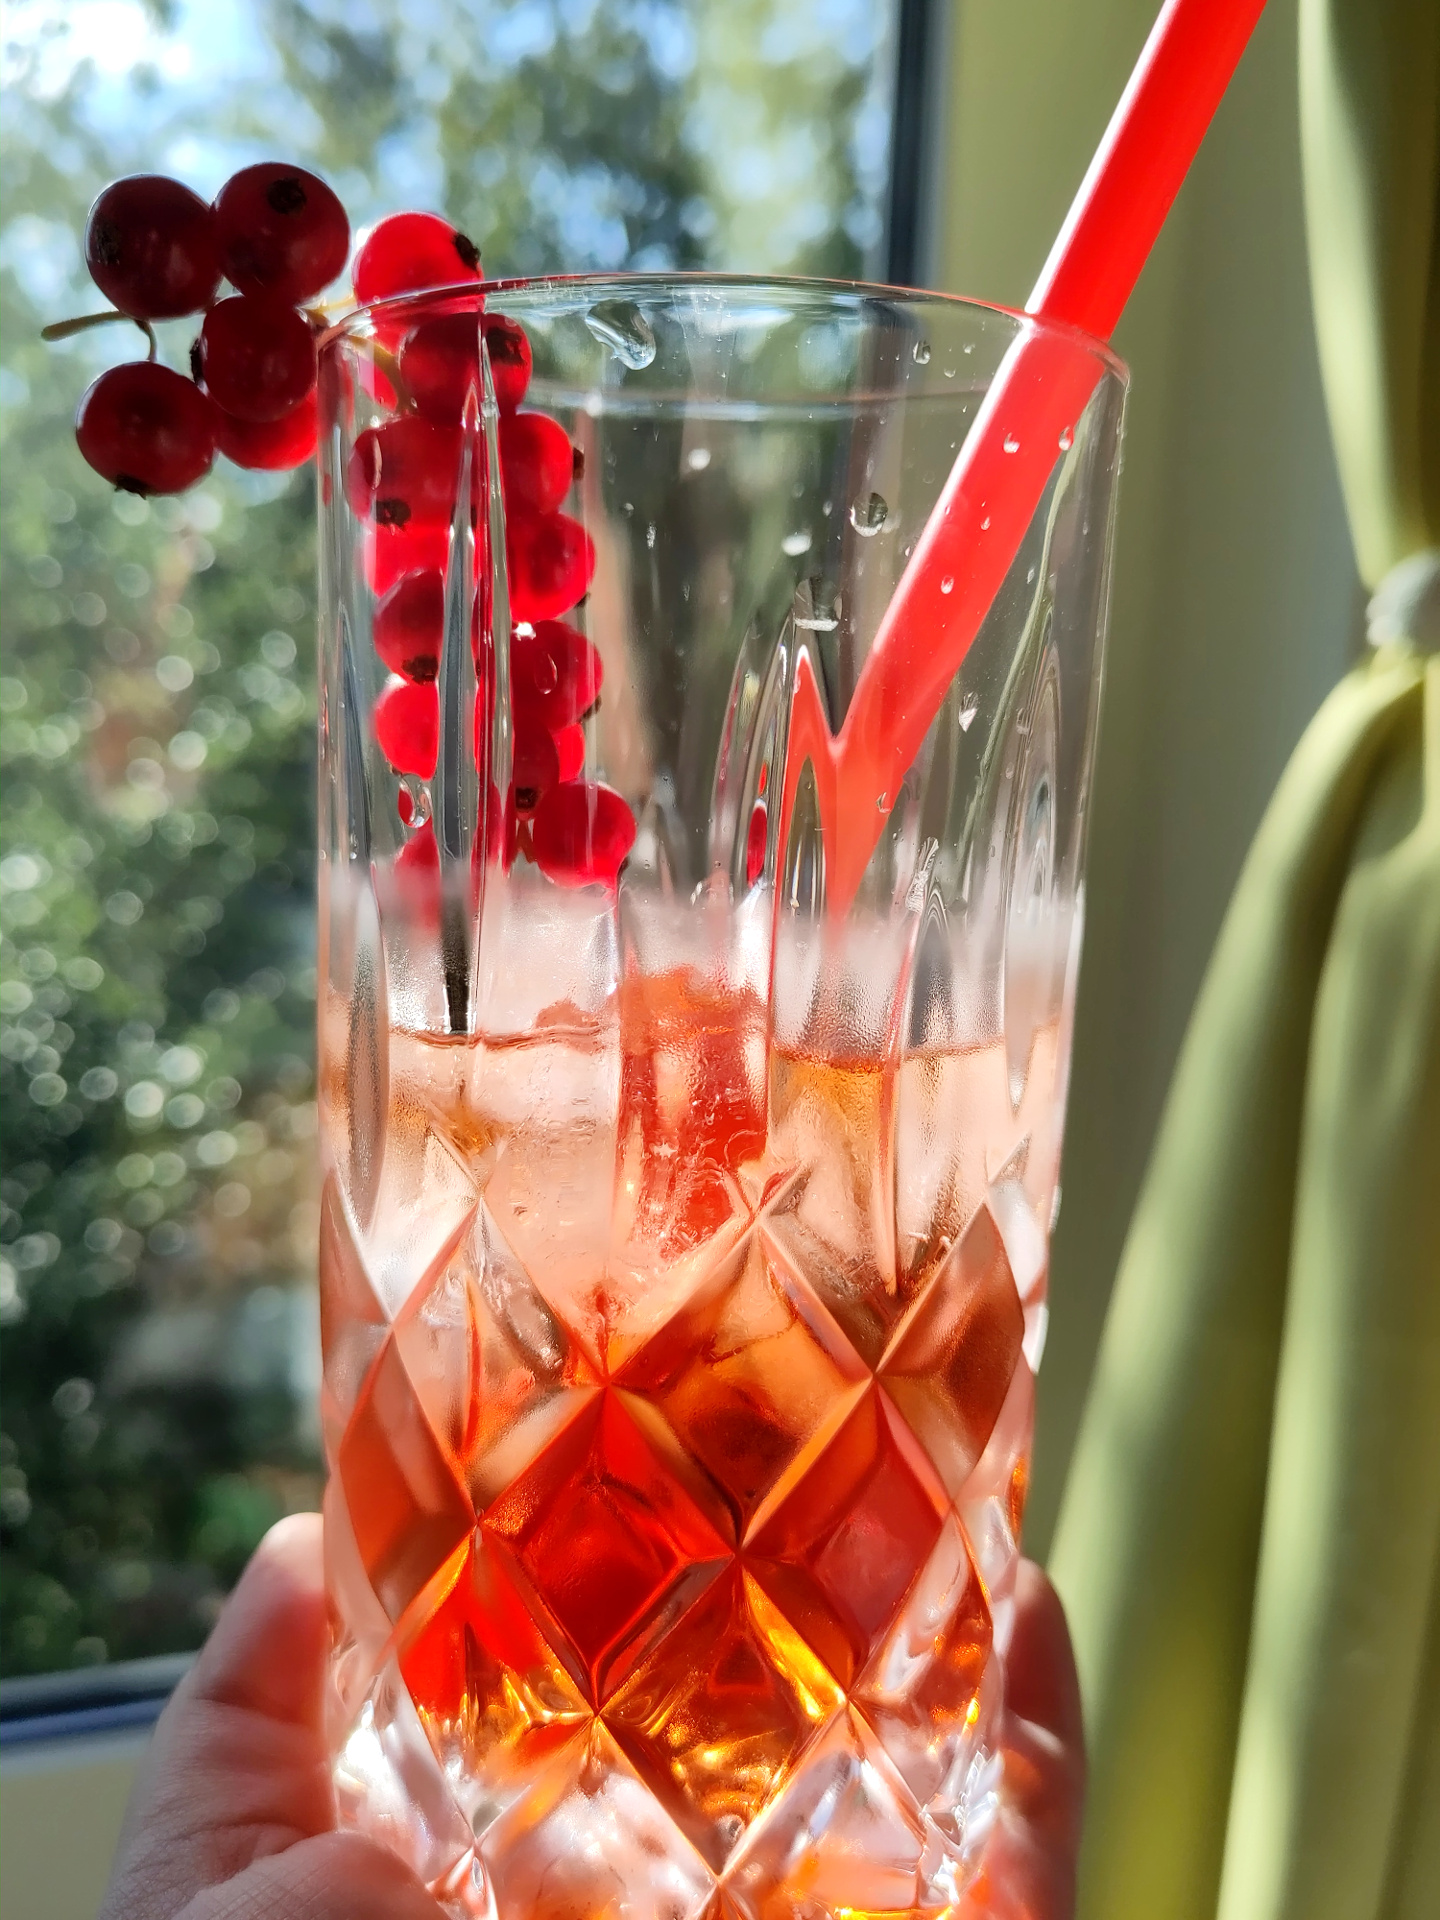 Ein alkoholfreier Aperol Cocktail in einem hohen Glas, das mit frischen roten Johannisbeeren dekoriert wurde.